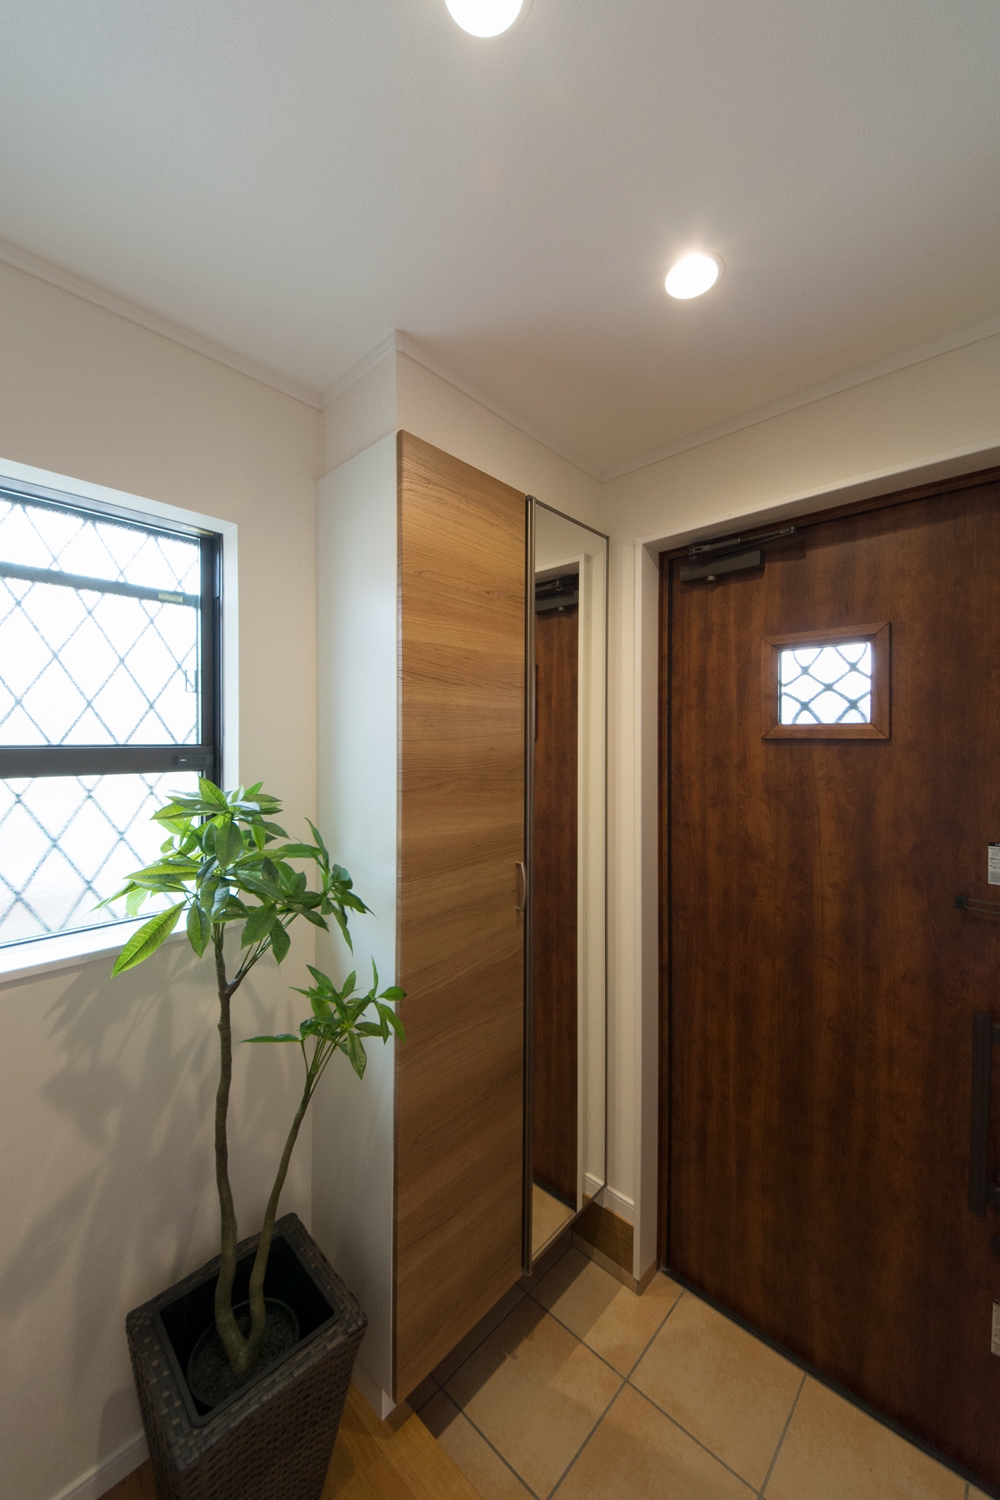 アンティーク調の玄関扉とベージュのテラコッタ調タイルがナチュラルな雰囲気を演出。